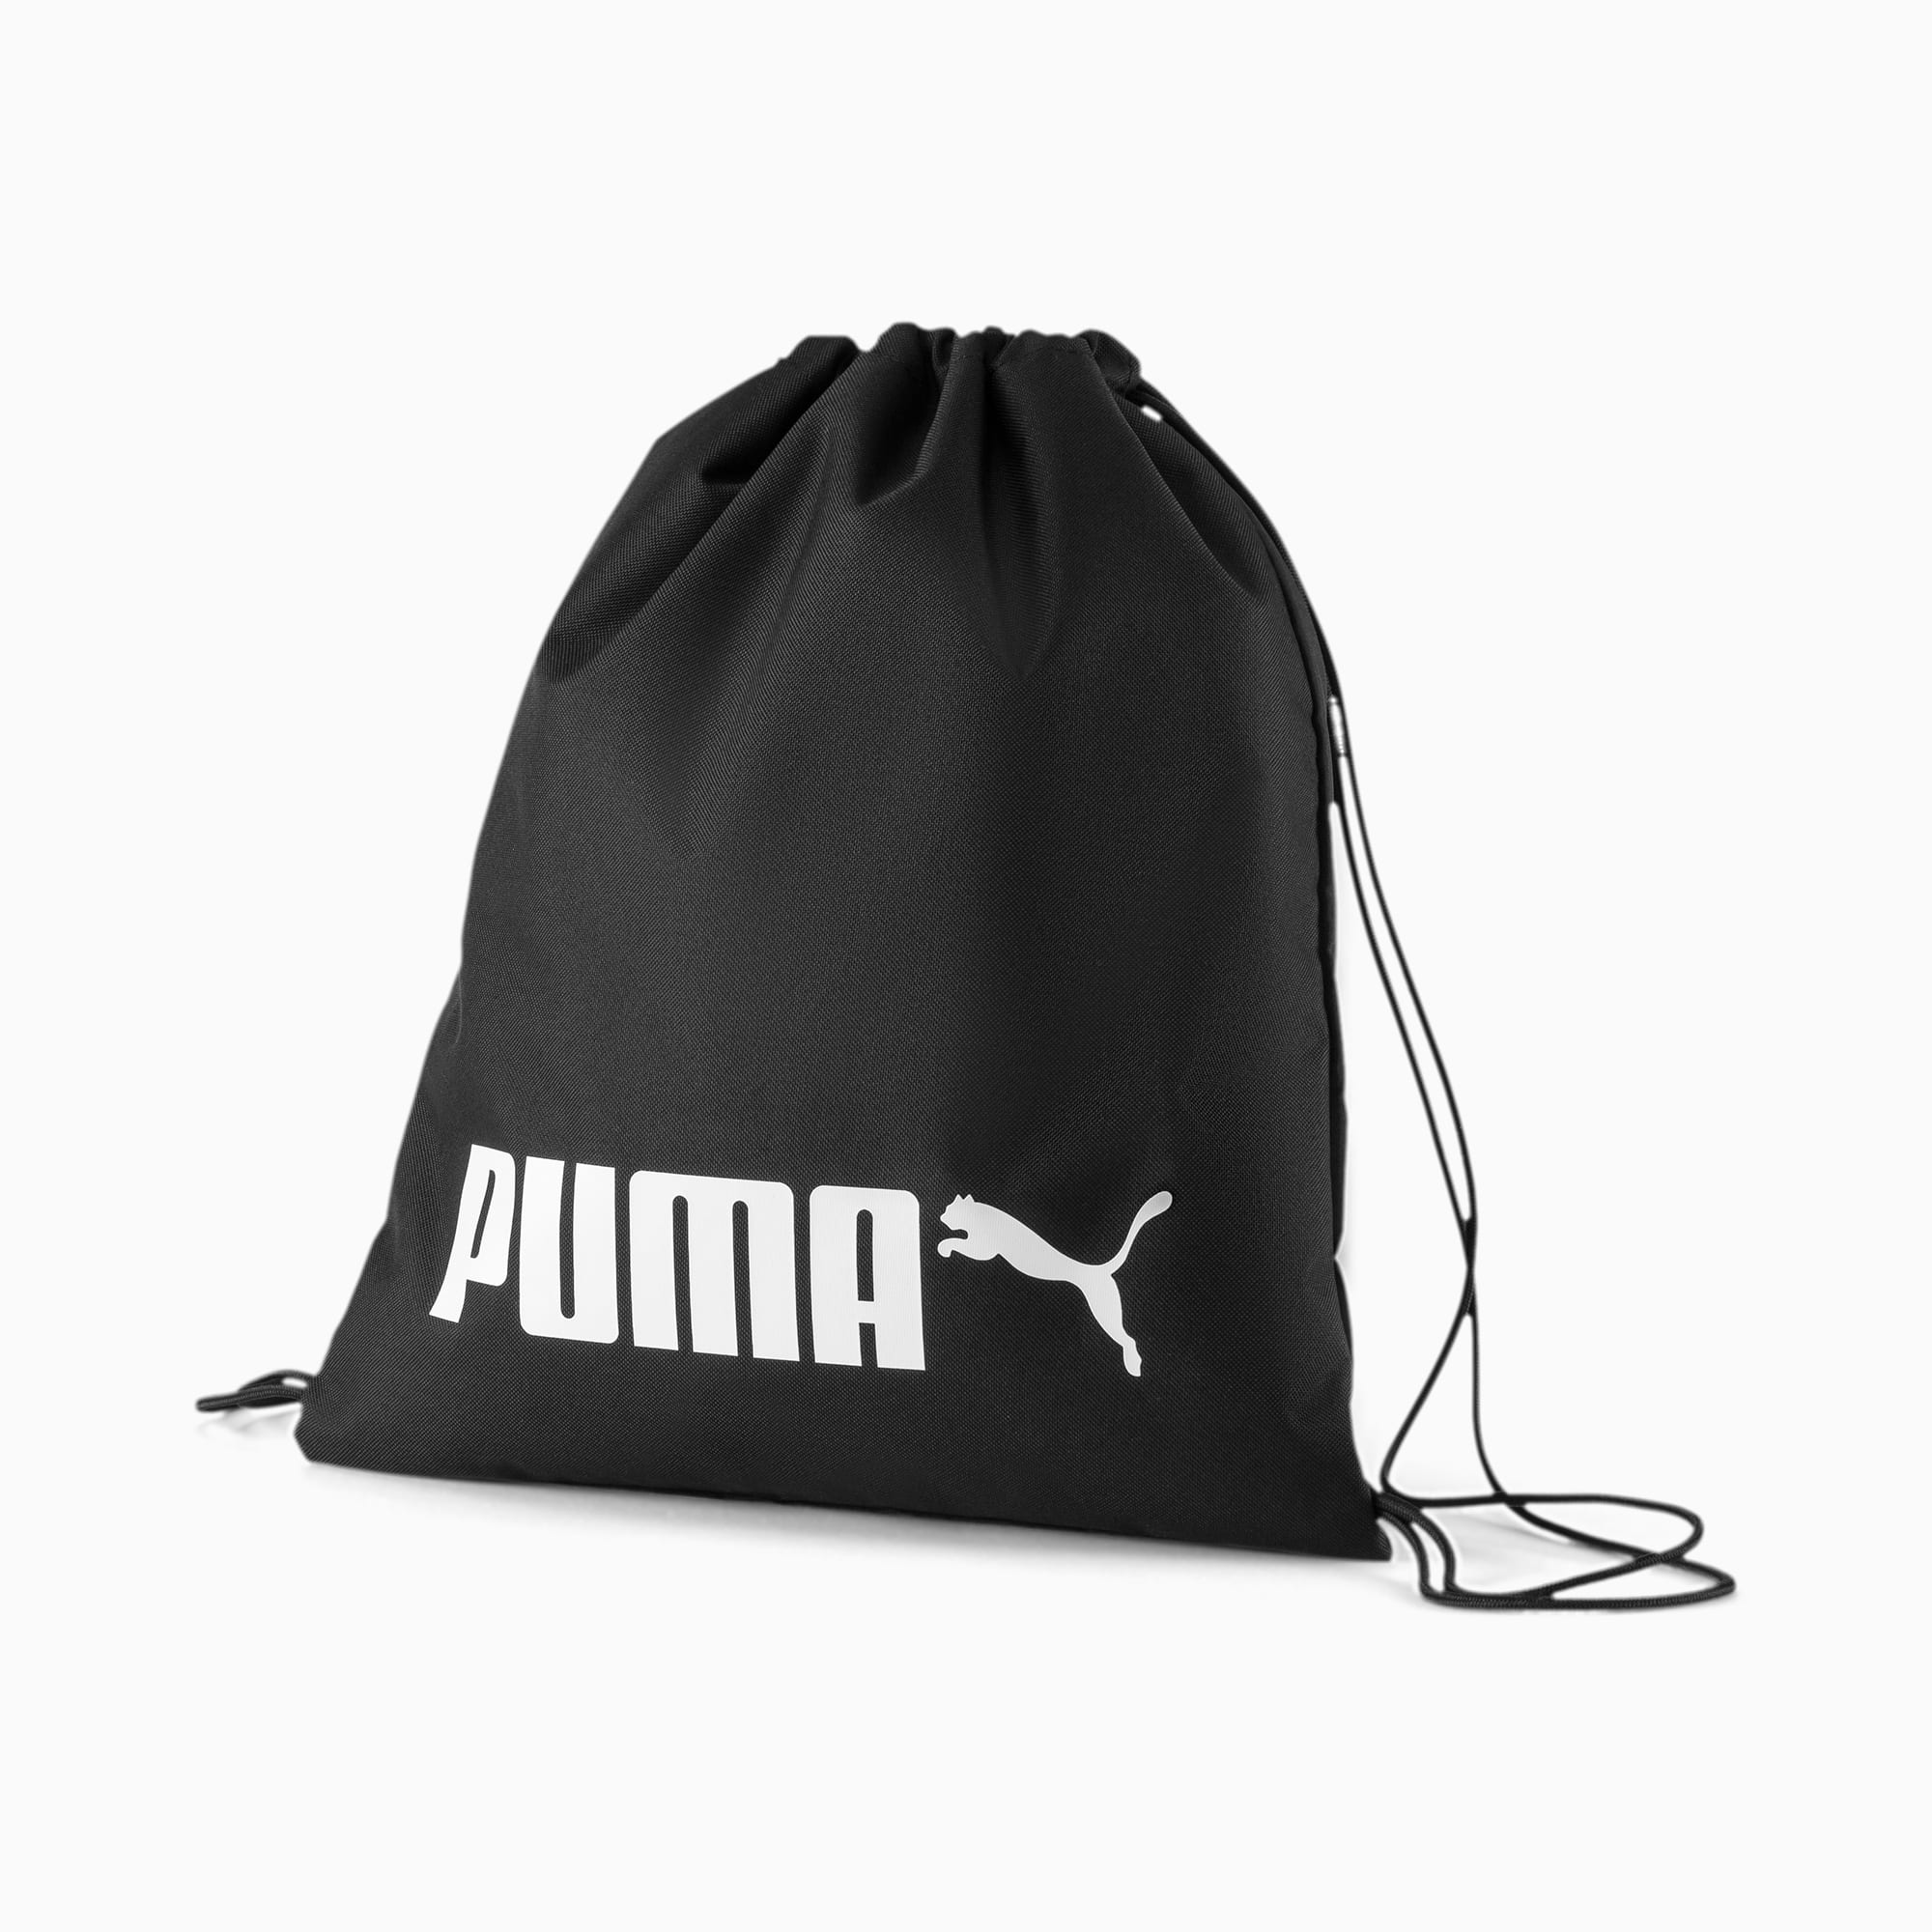 puma gym bag black